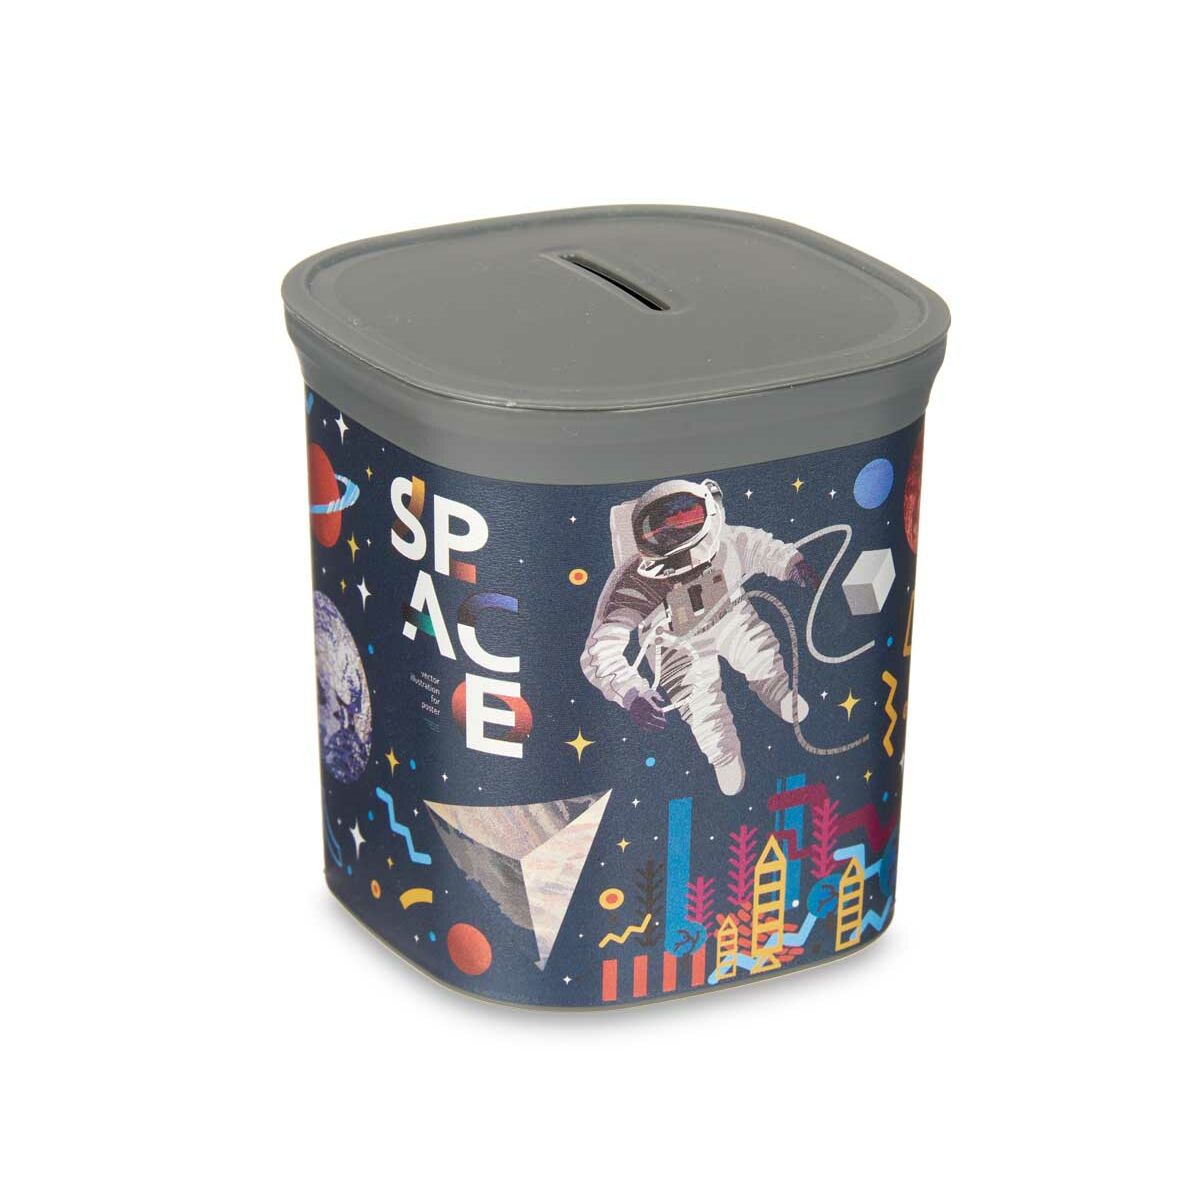 Salvadanaio Multicolore Astronauta Plastica 9 x 10,2 x 9 cm (48 Unità)